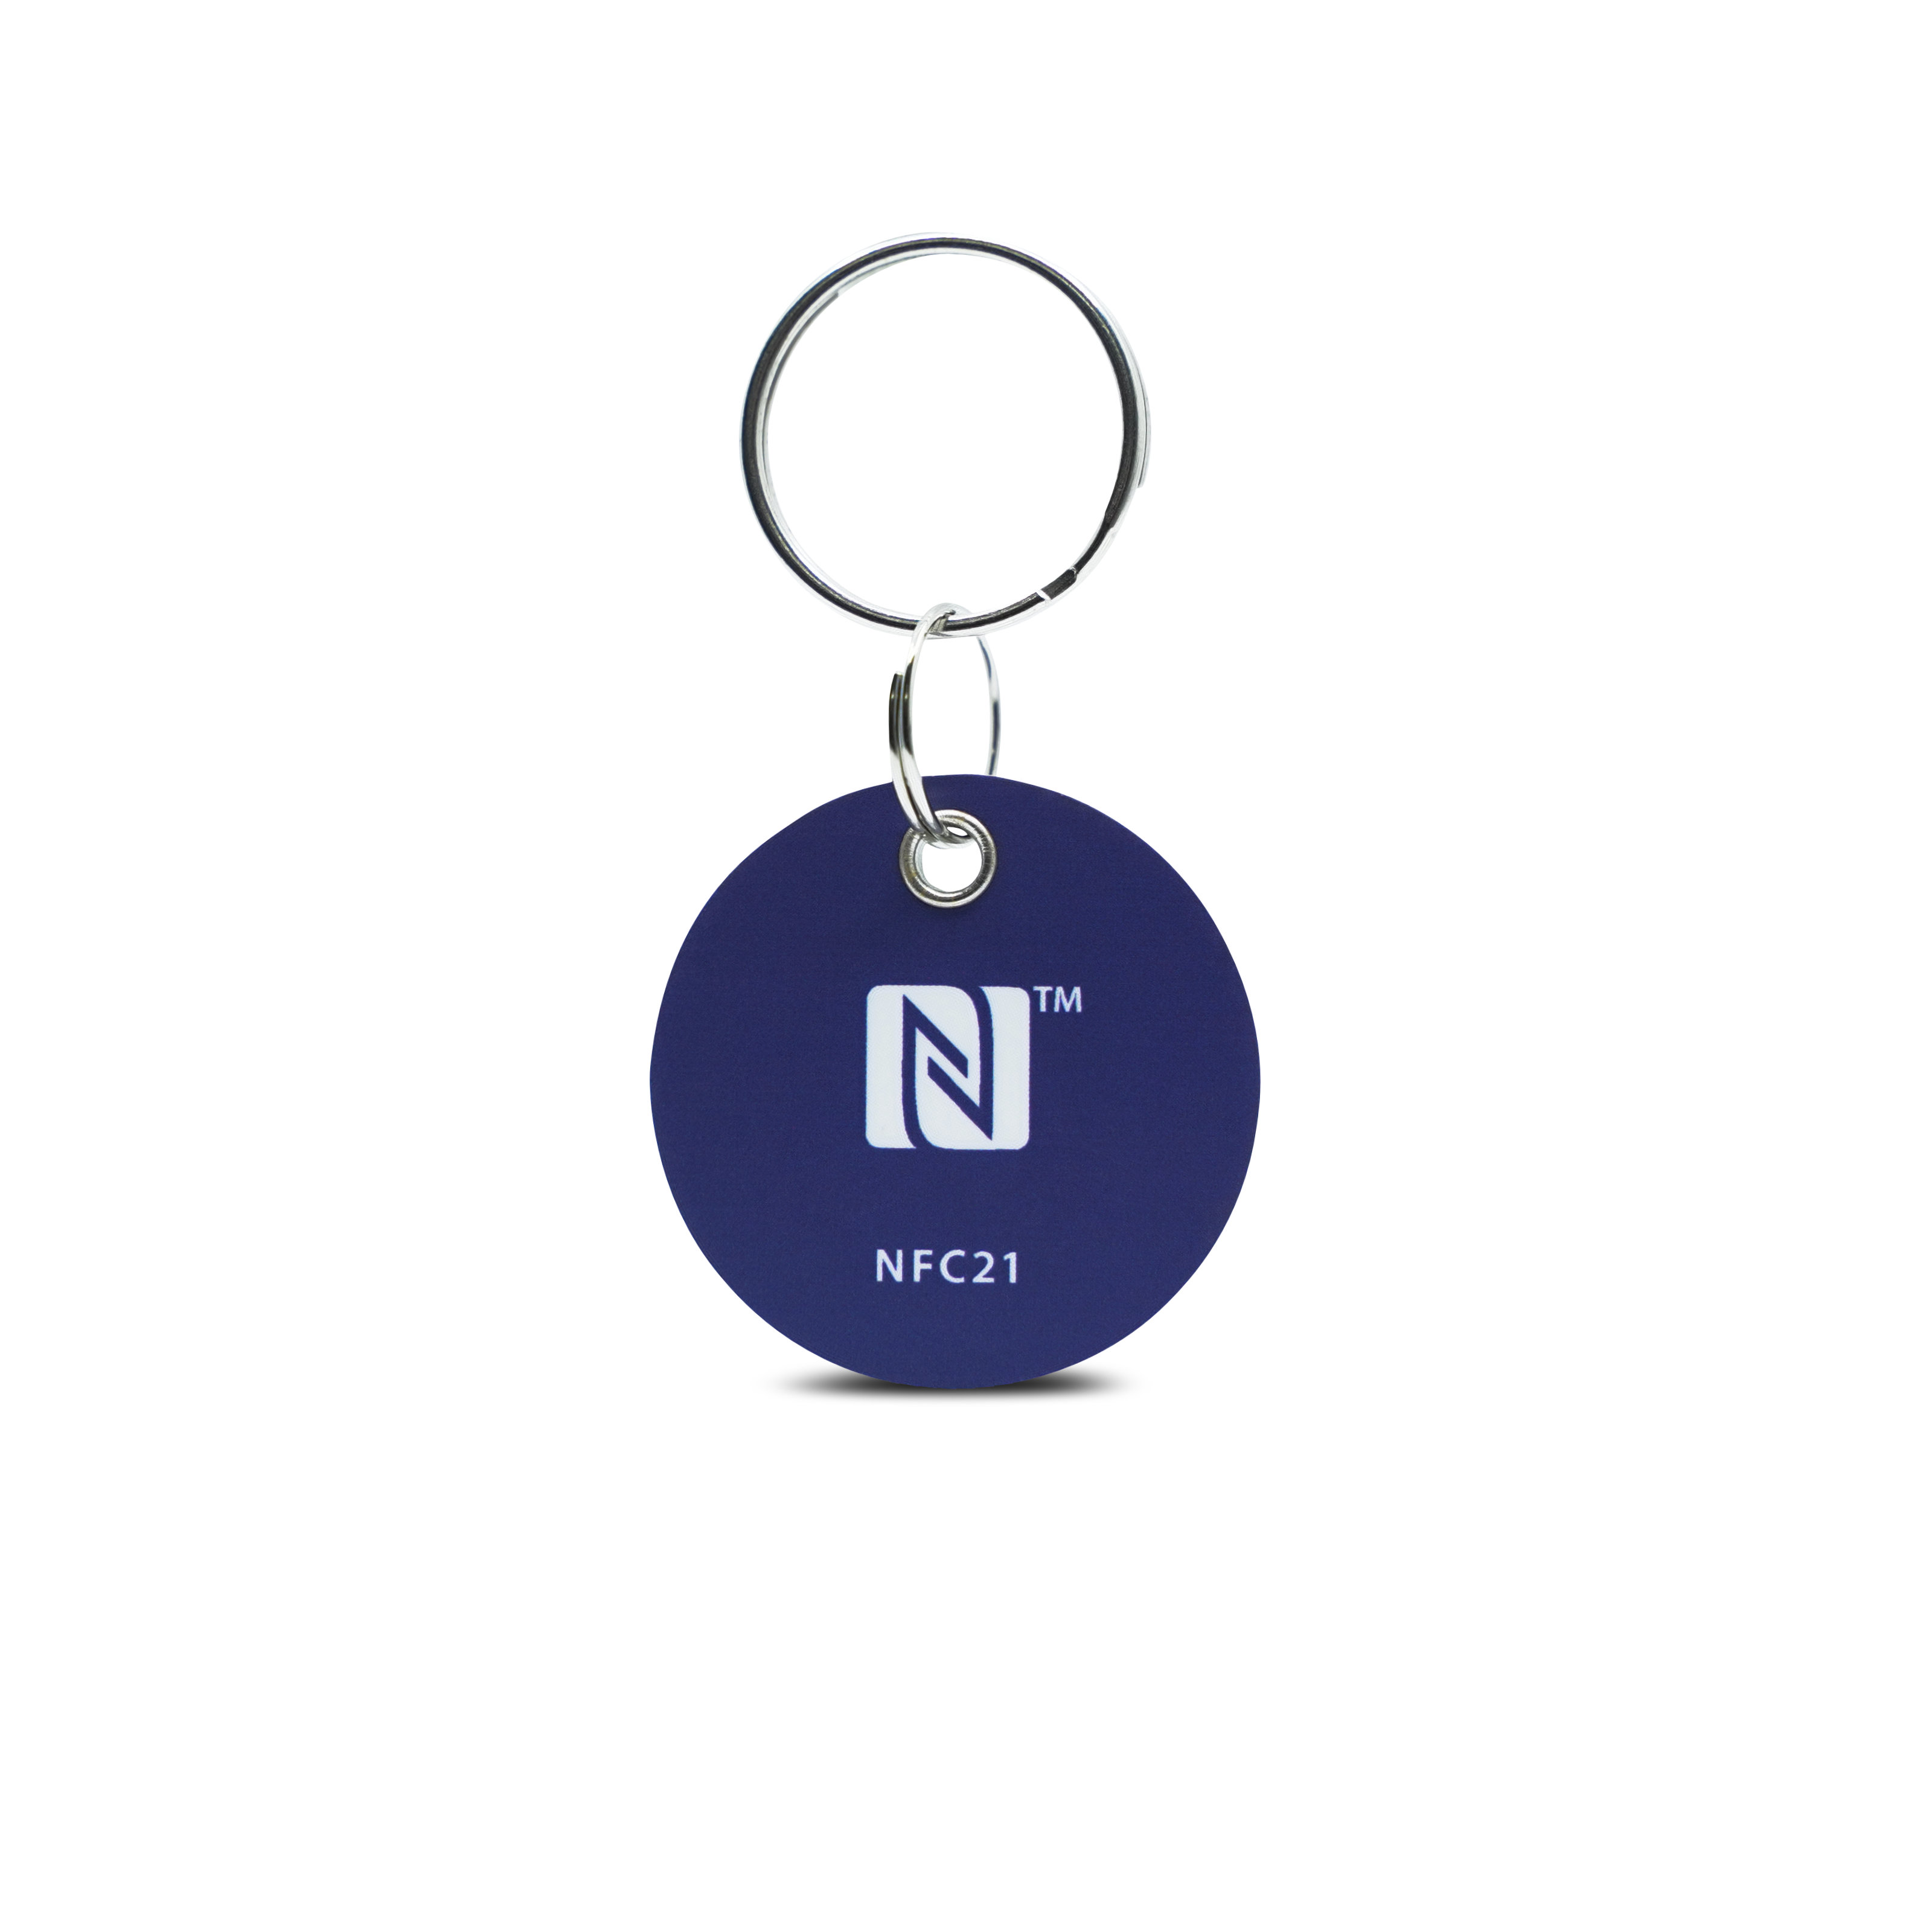 Vorderseite des NFC Schlüsselanhängers aus PVC in blau mit Metallring